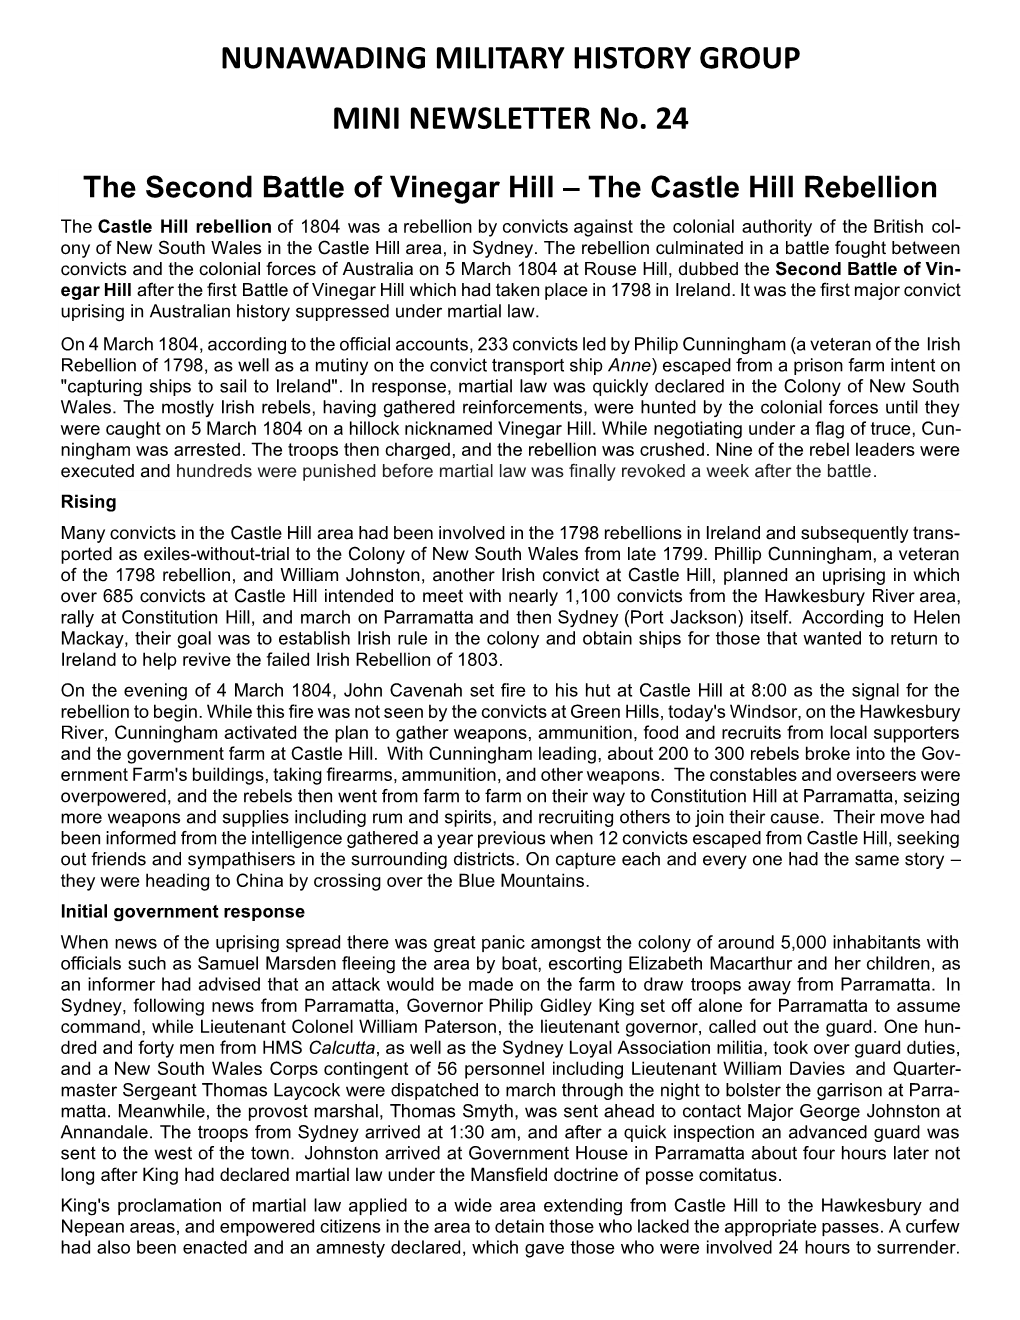 The Castle Hill Rebellion